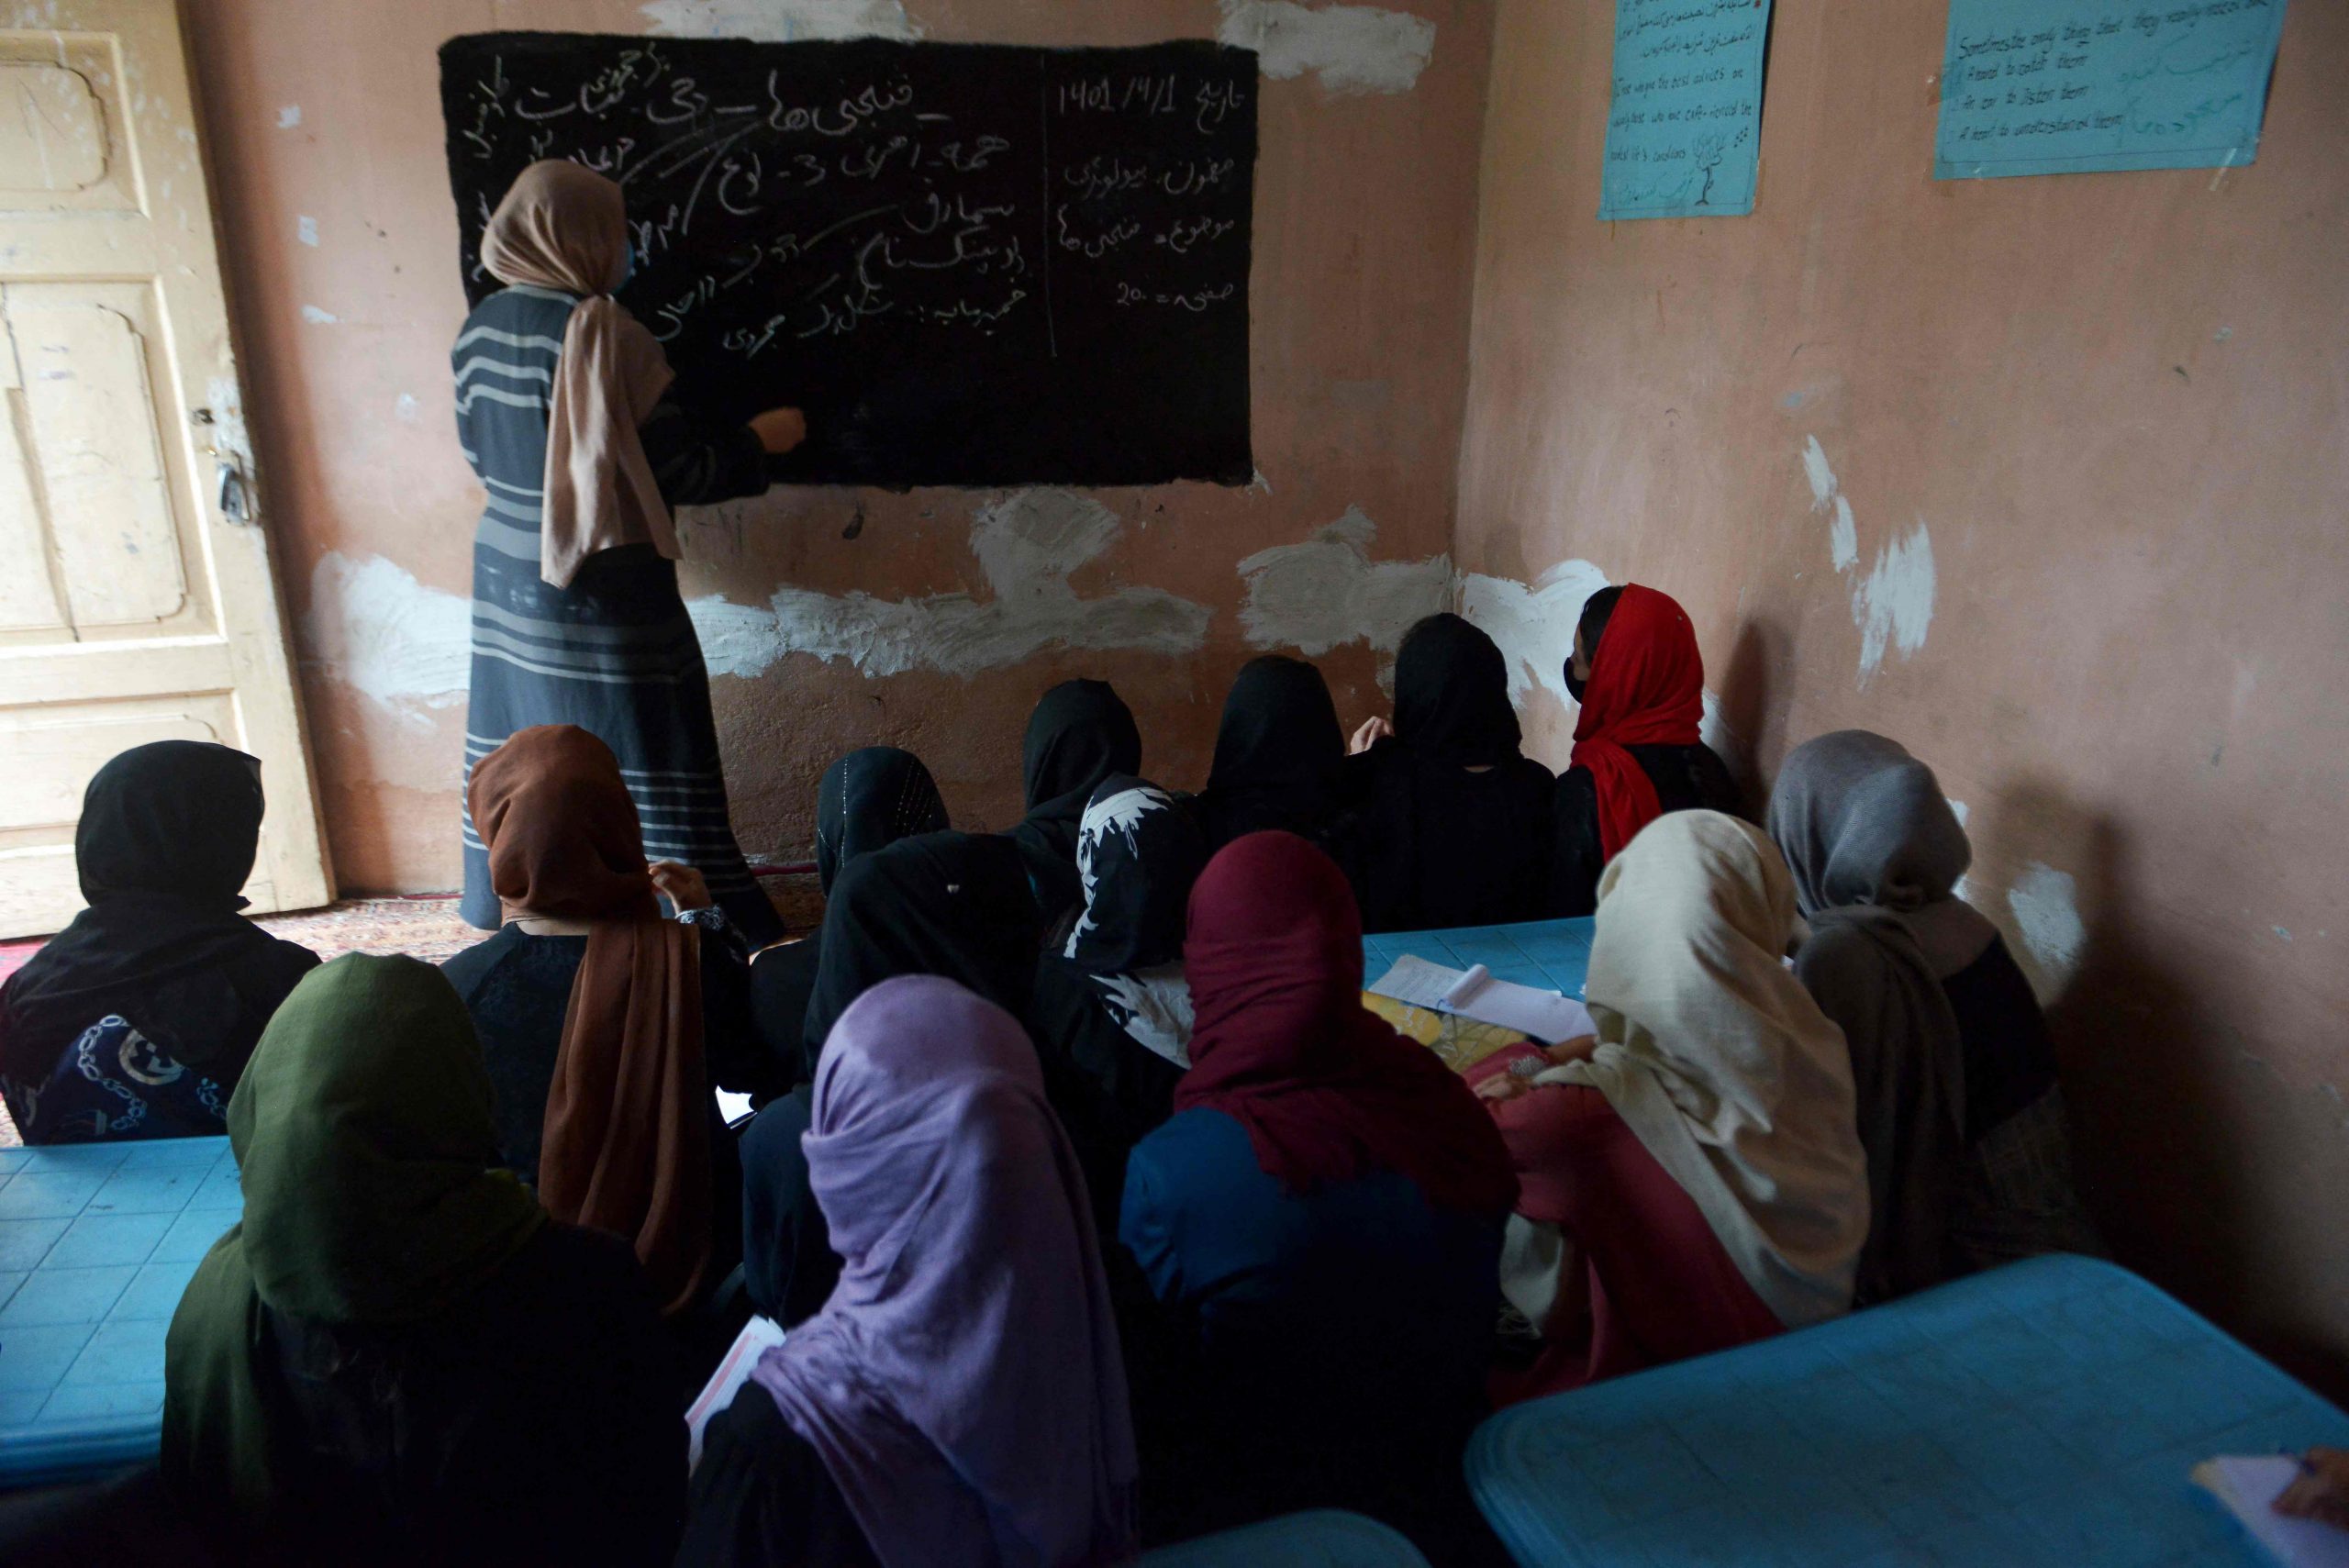  阿富汗塔利班士兵重返校园 女生却要寻“秘密学校”艰难求学 